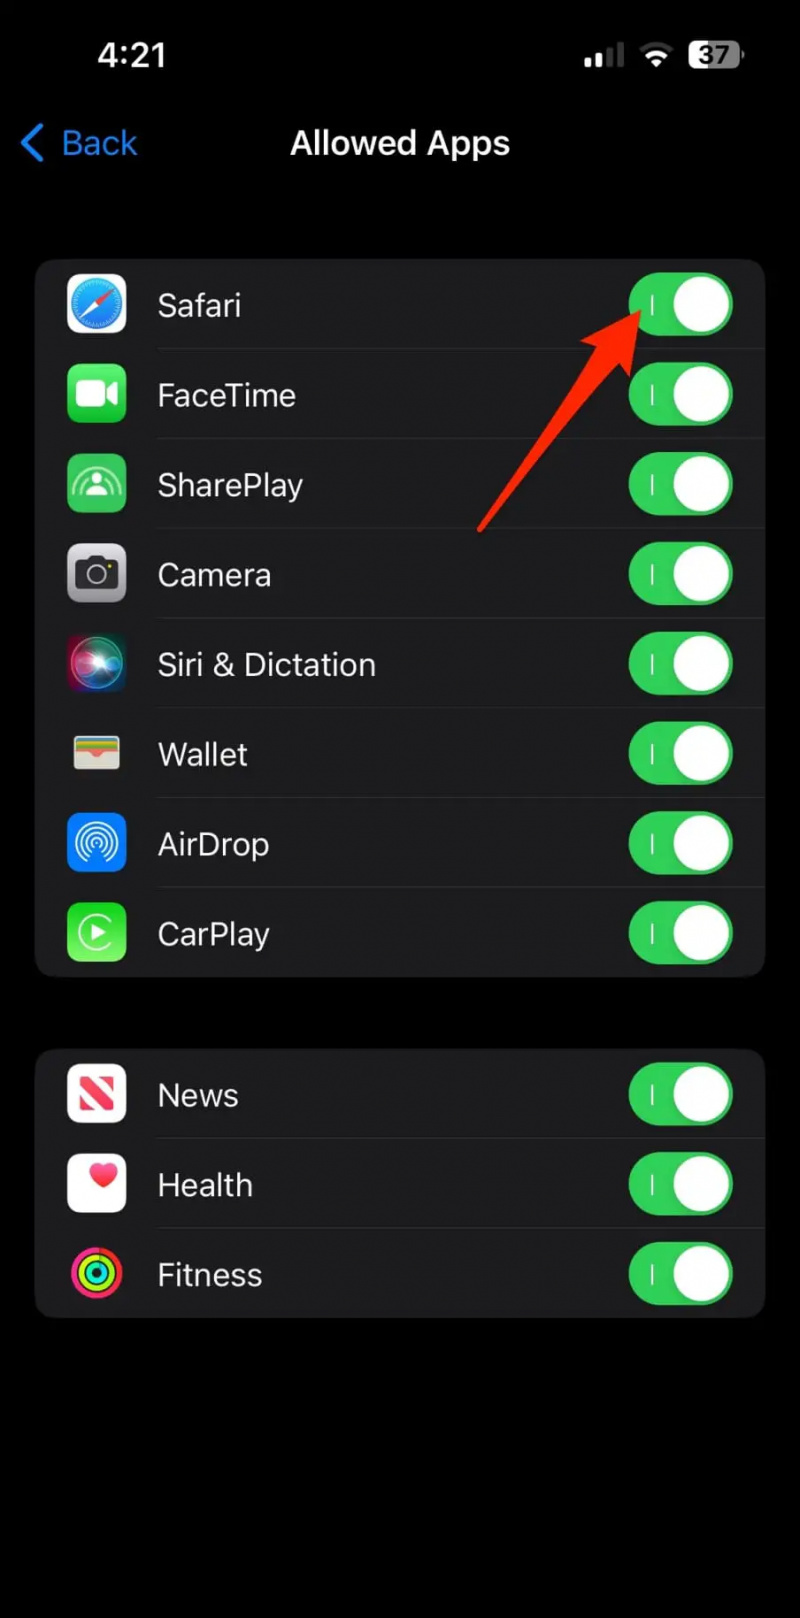   İçerik Kısıtlamasını Kullanarak iPhone'daki Uygulamaları Kilitleyin